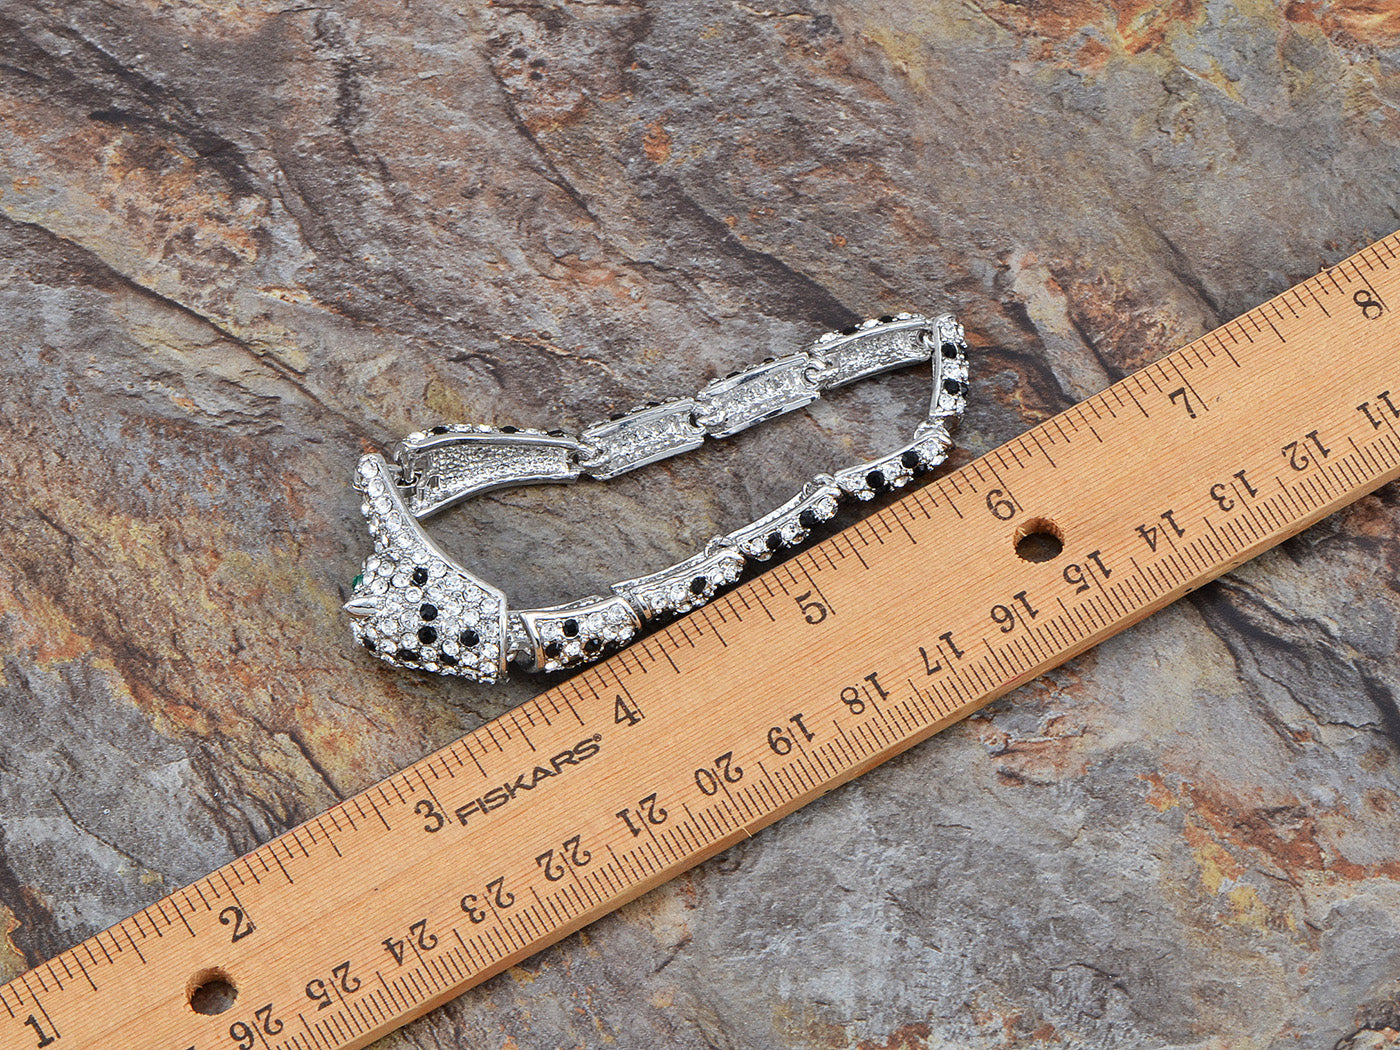 Swarovski Crystal Elements Jet Black Spotted Leopard Link Bracelet